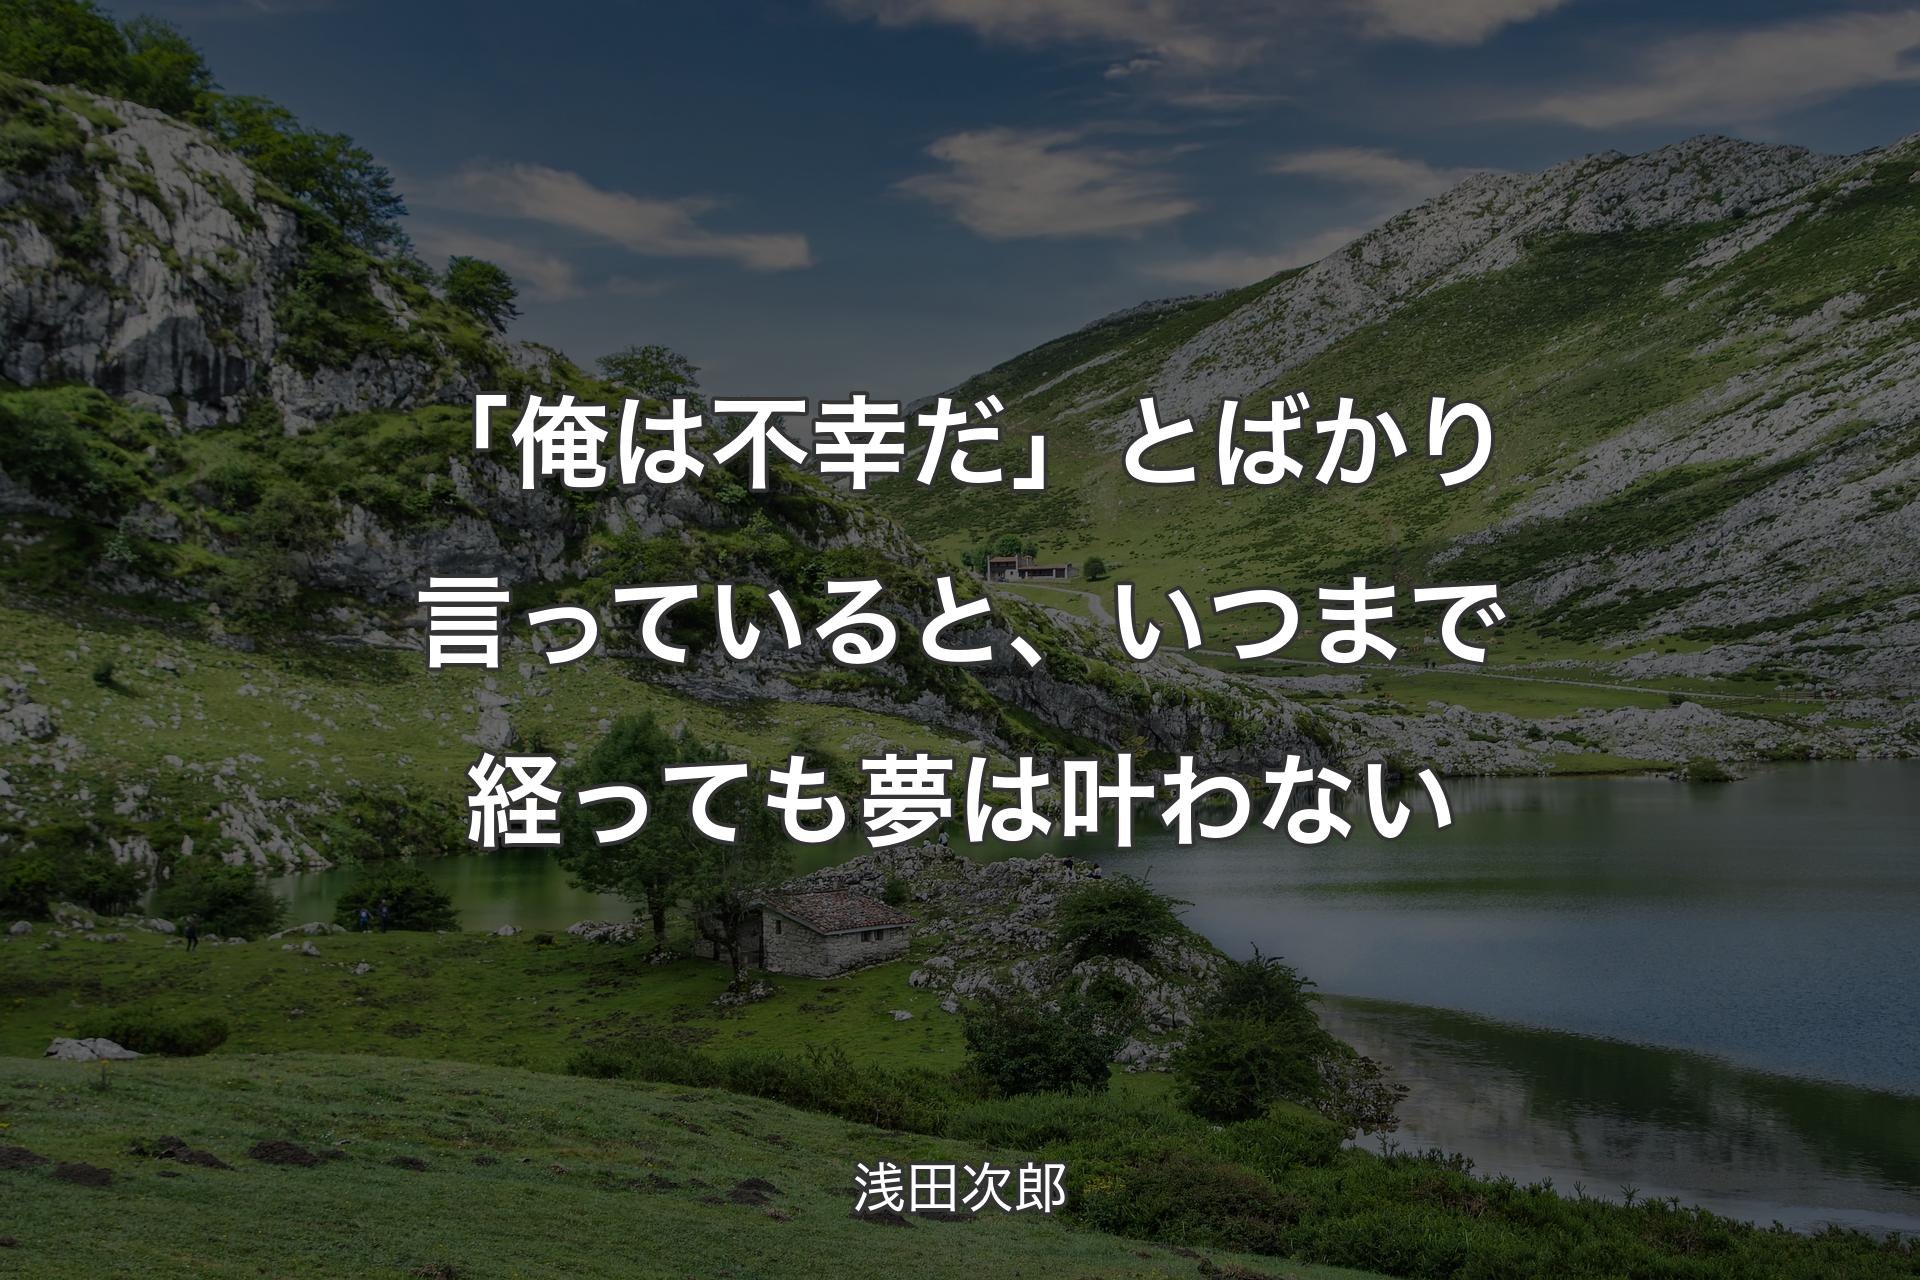 【背景1】「俺は不幸だ」とばかり言っていると、いつまで経っても夢は叶わない - 浅田次郎